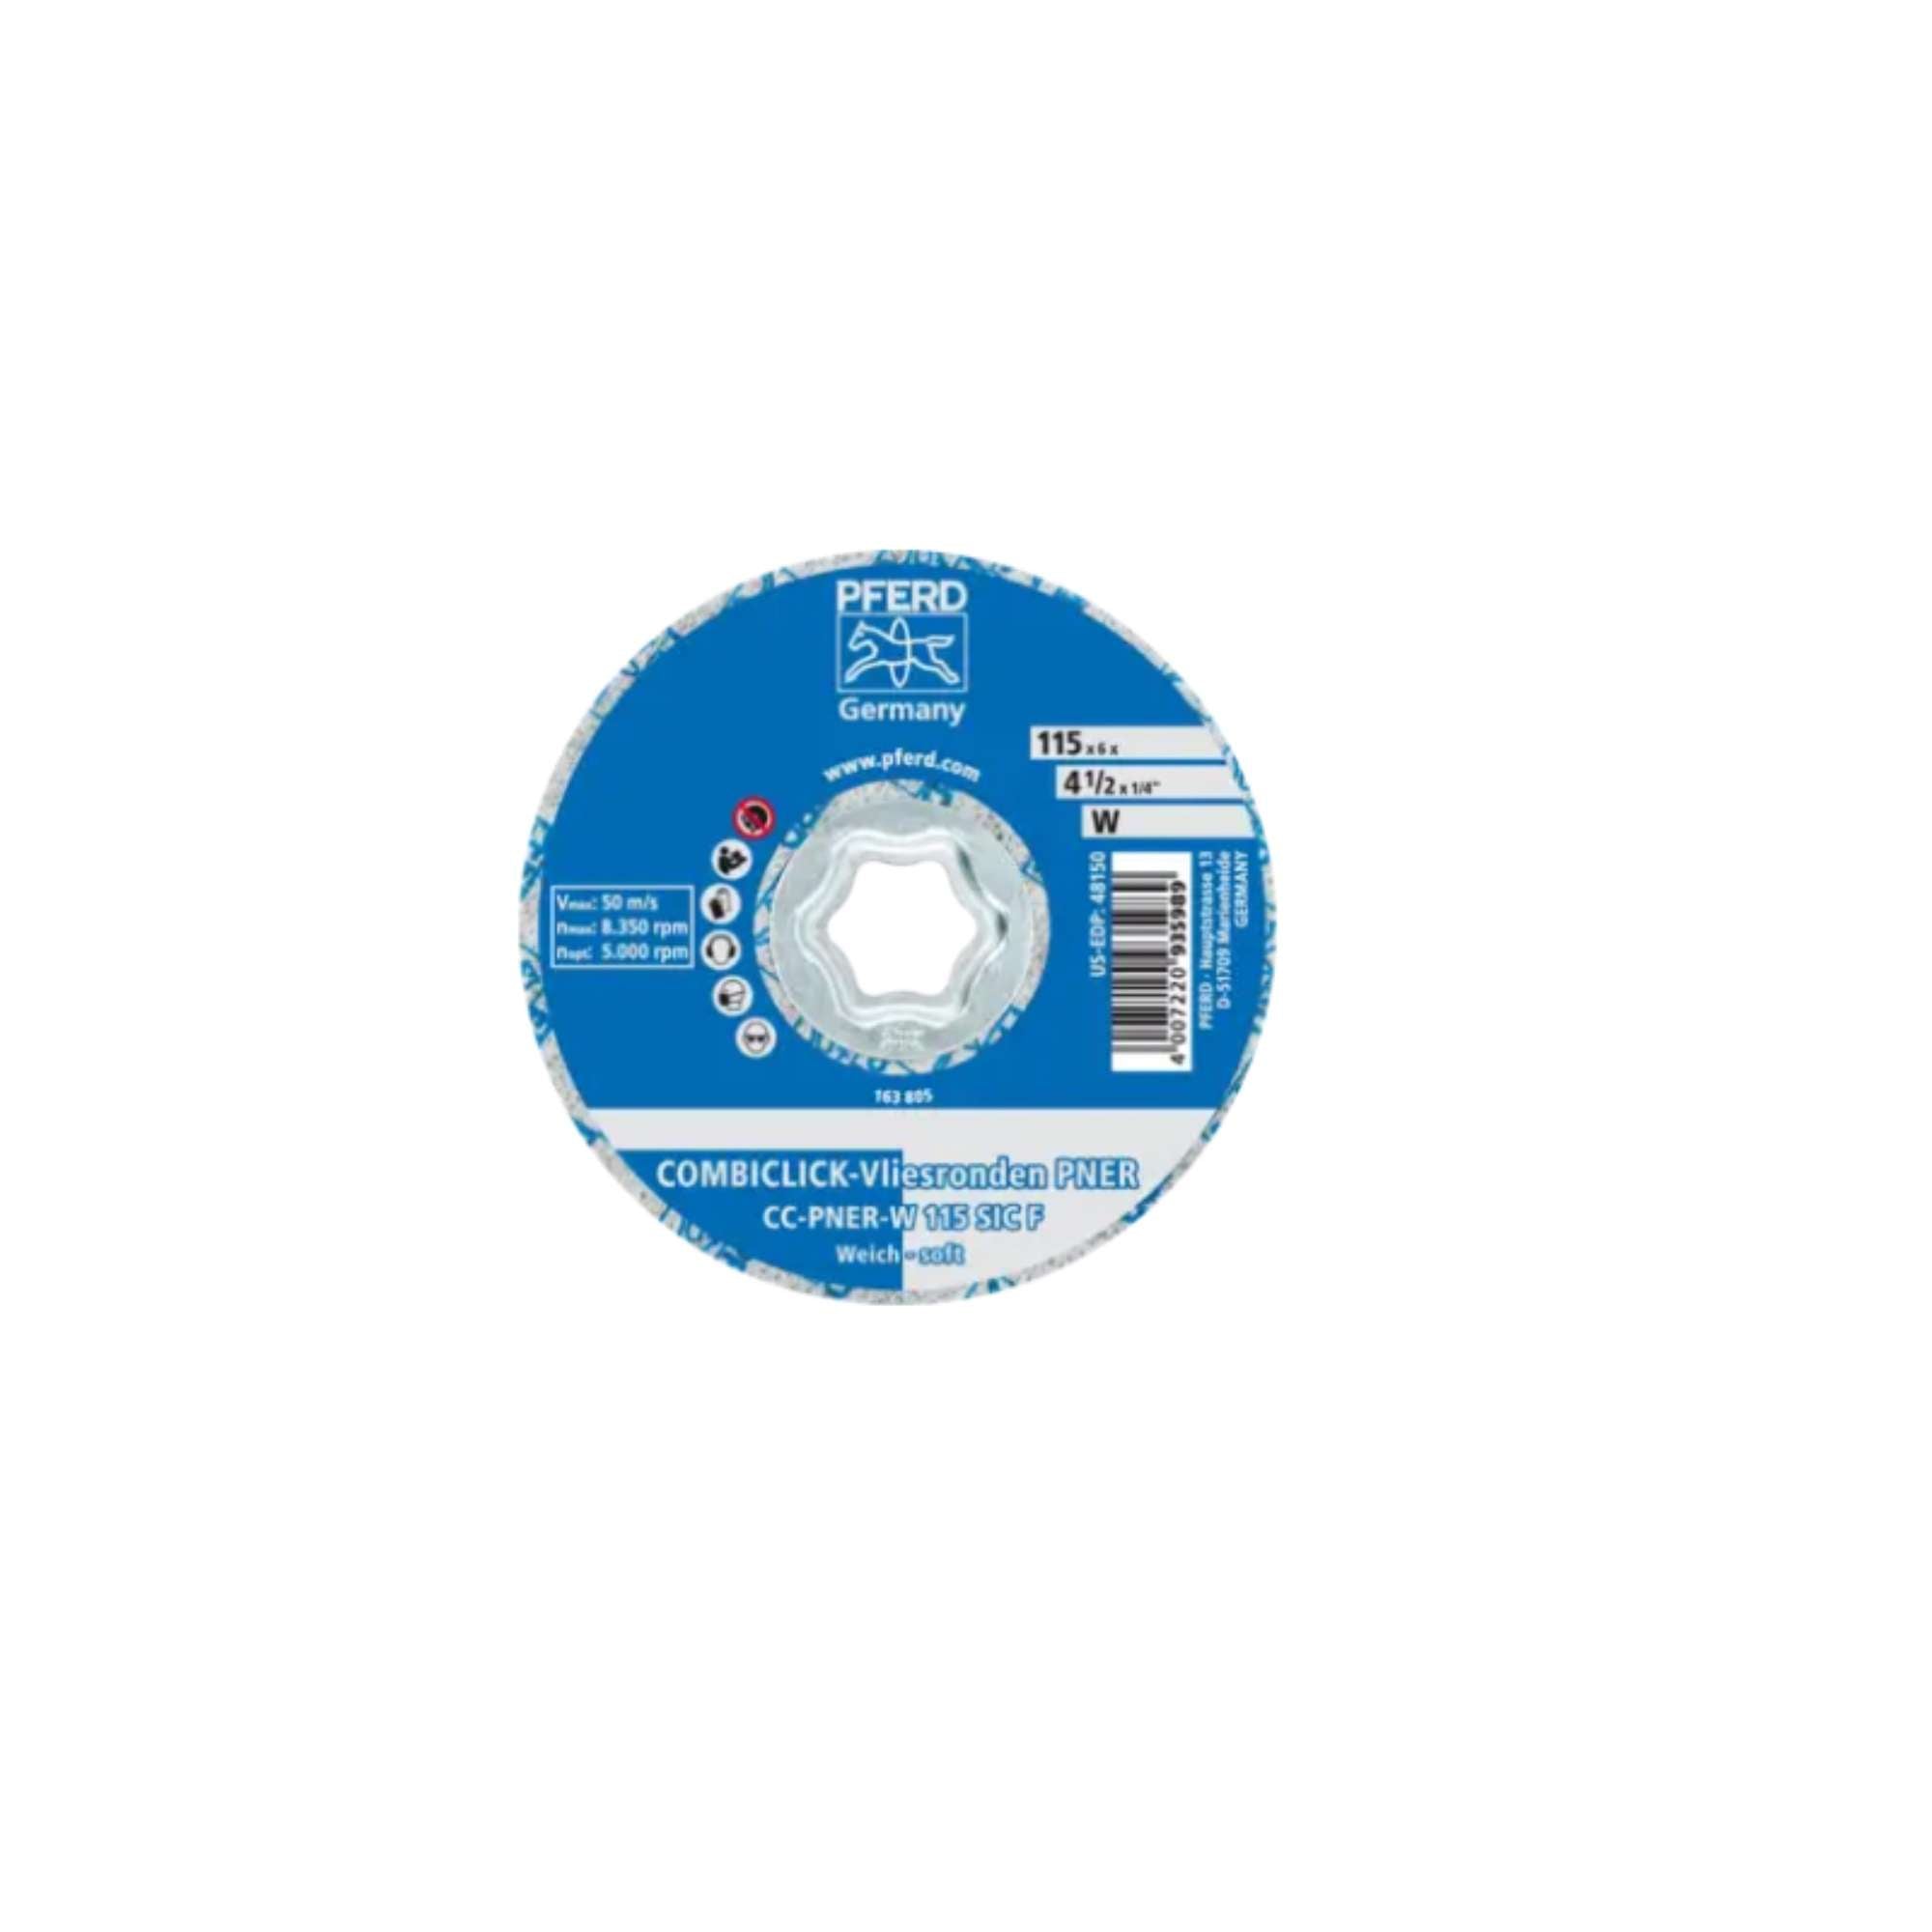 Combiclick Disc Cc-Pner W 115 Sicf - Pferd 42002046